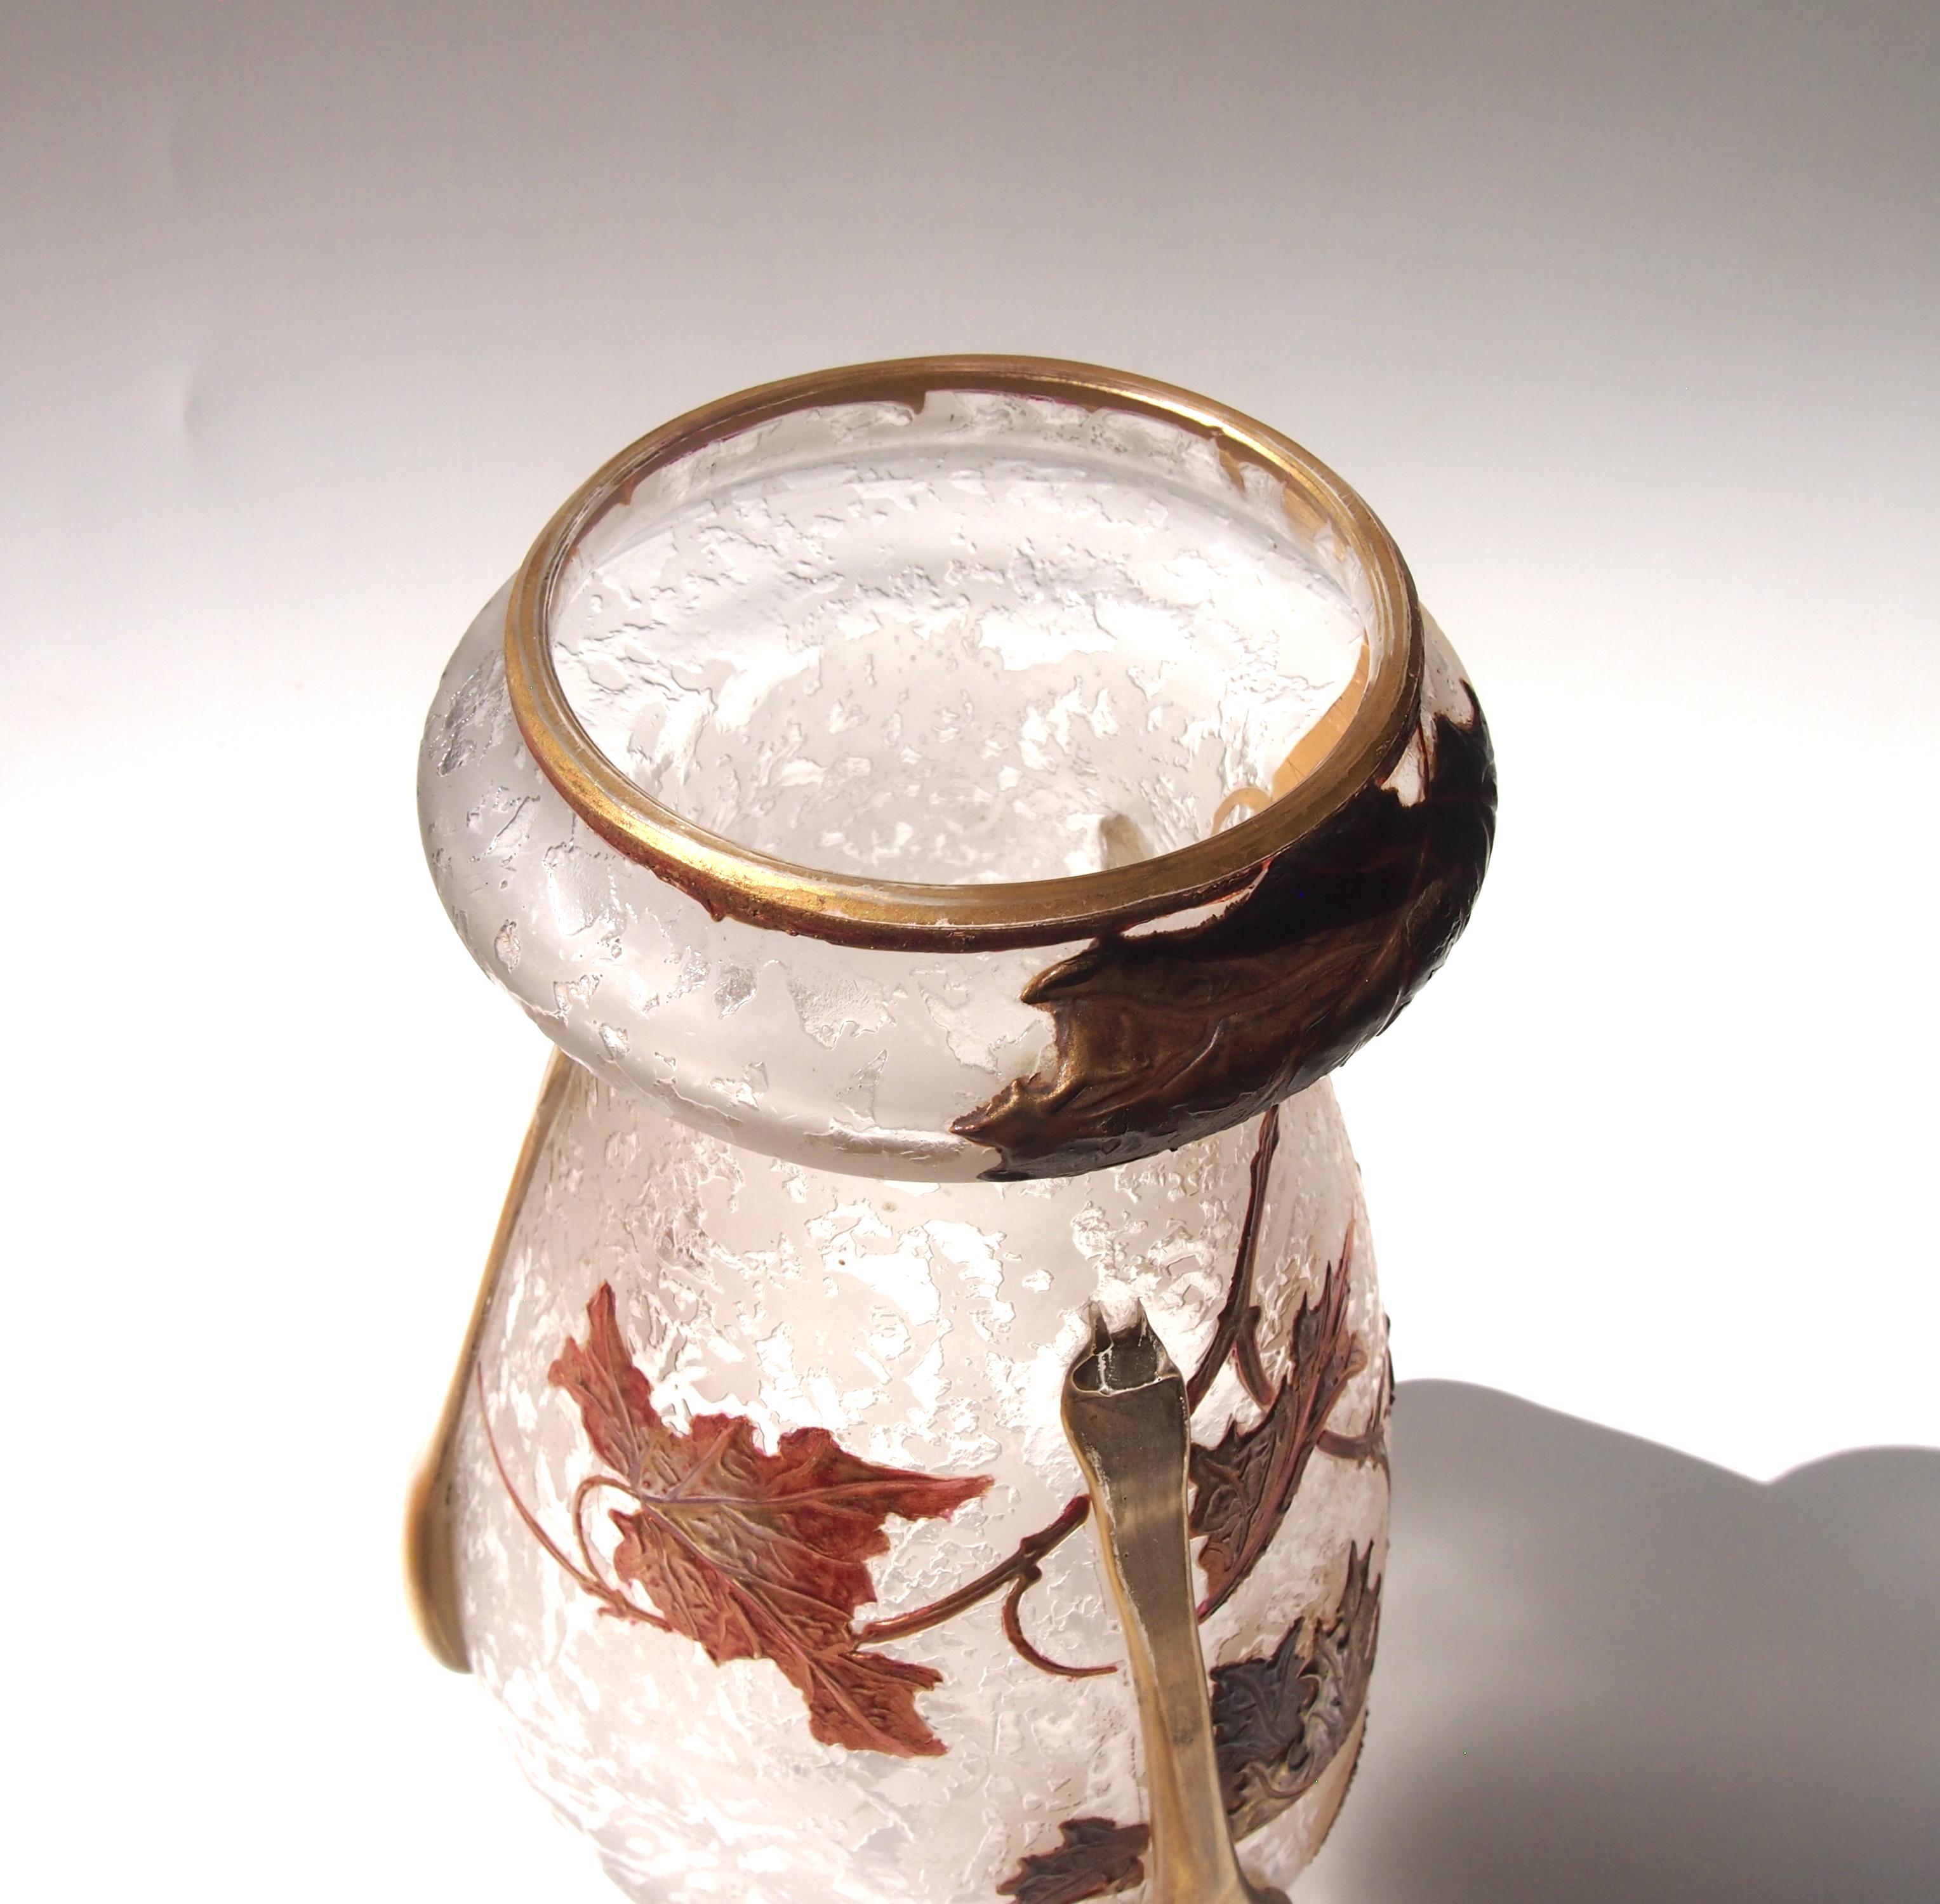 Art Glass Art Nouveau Legras 'Tear' Vase